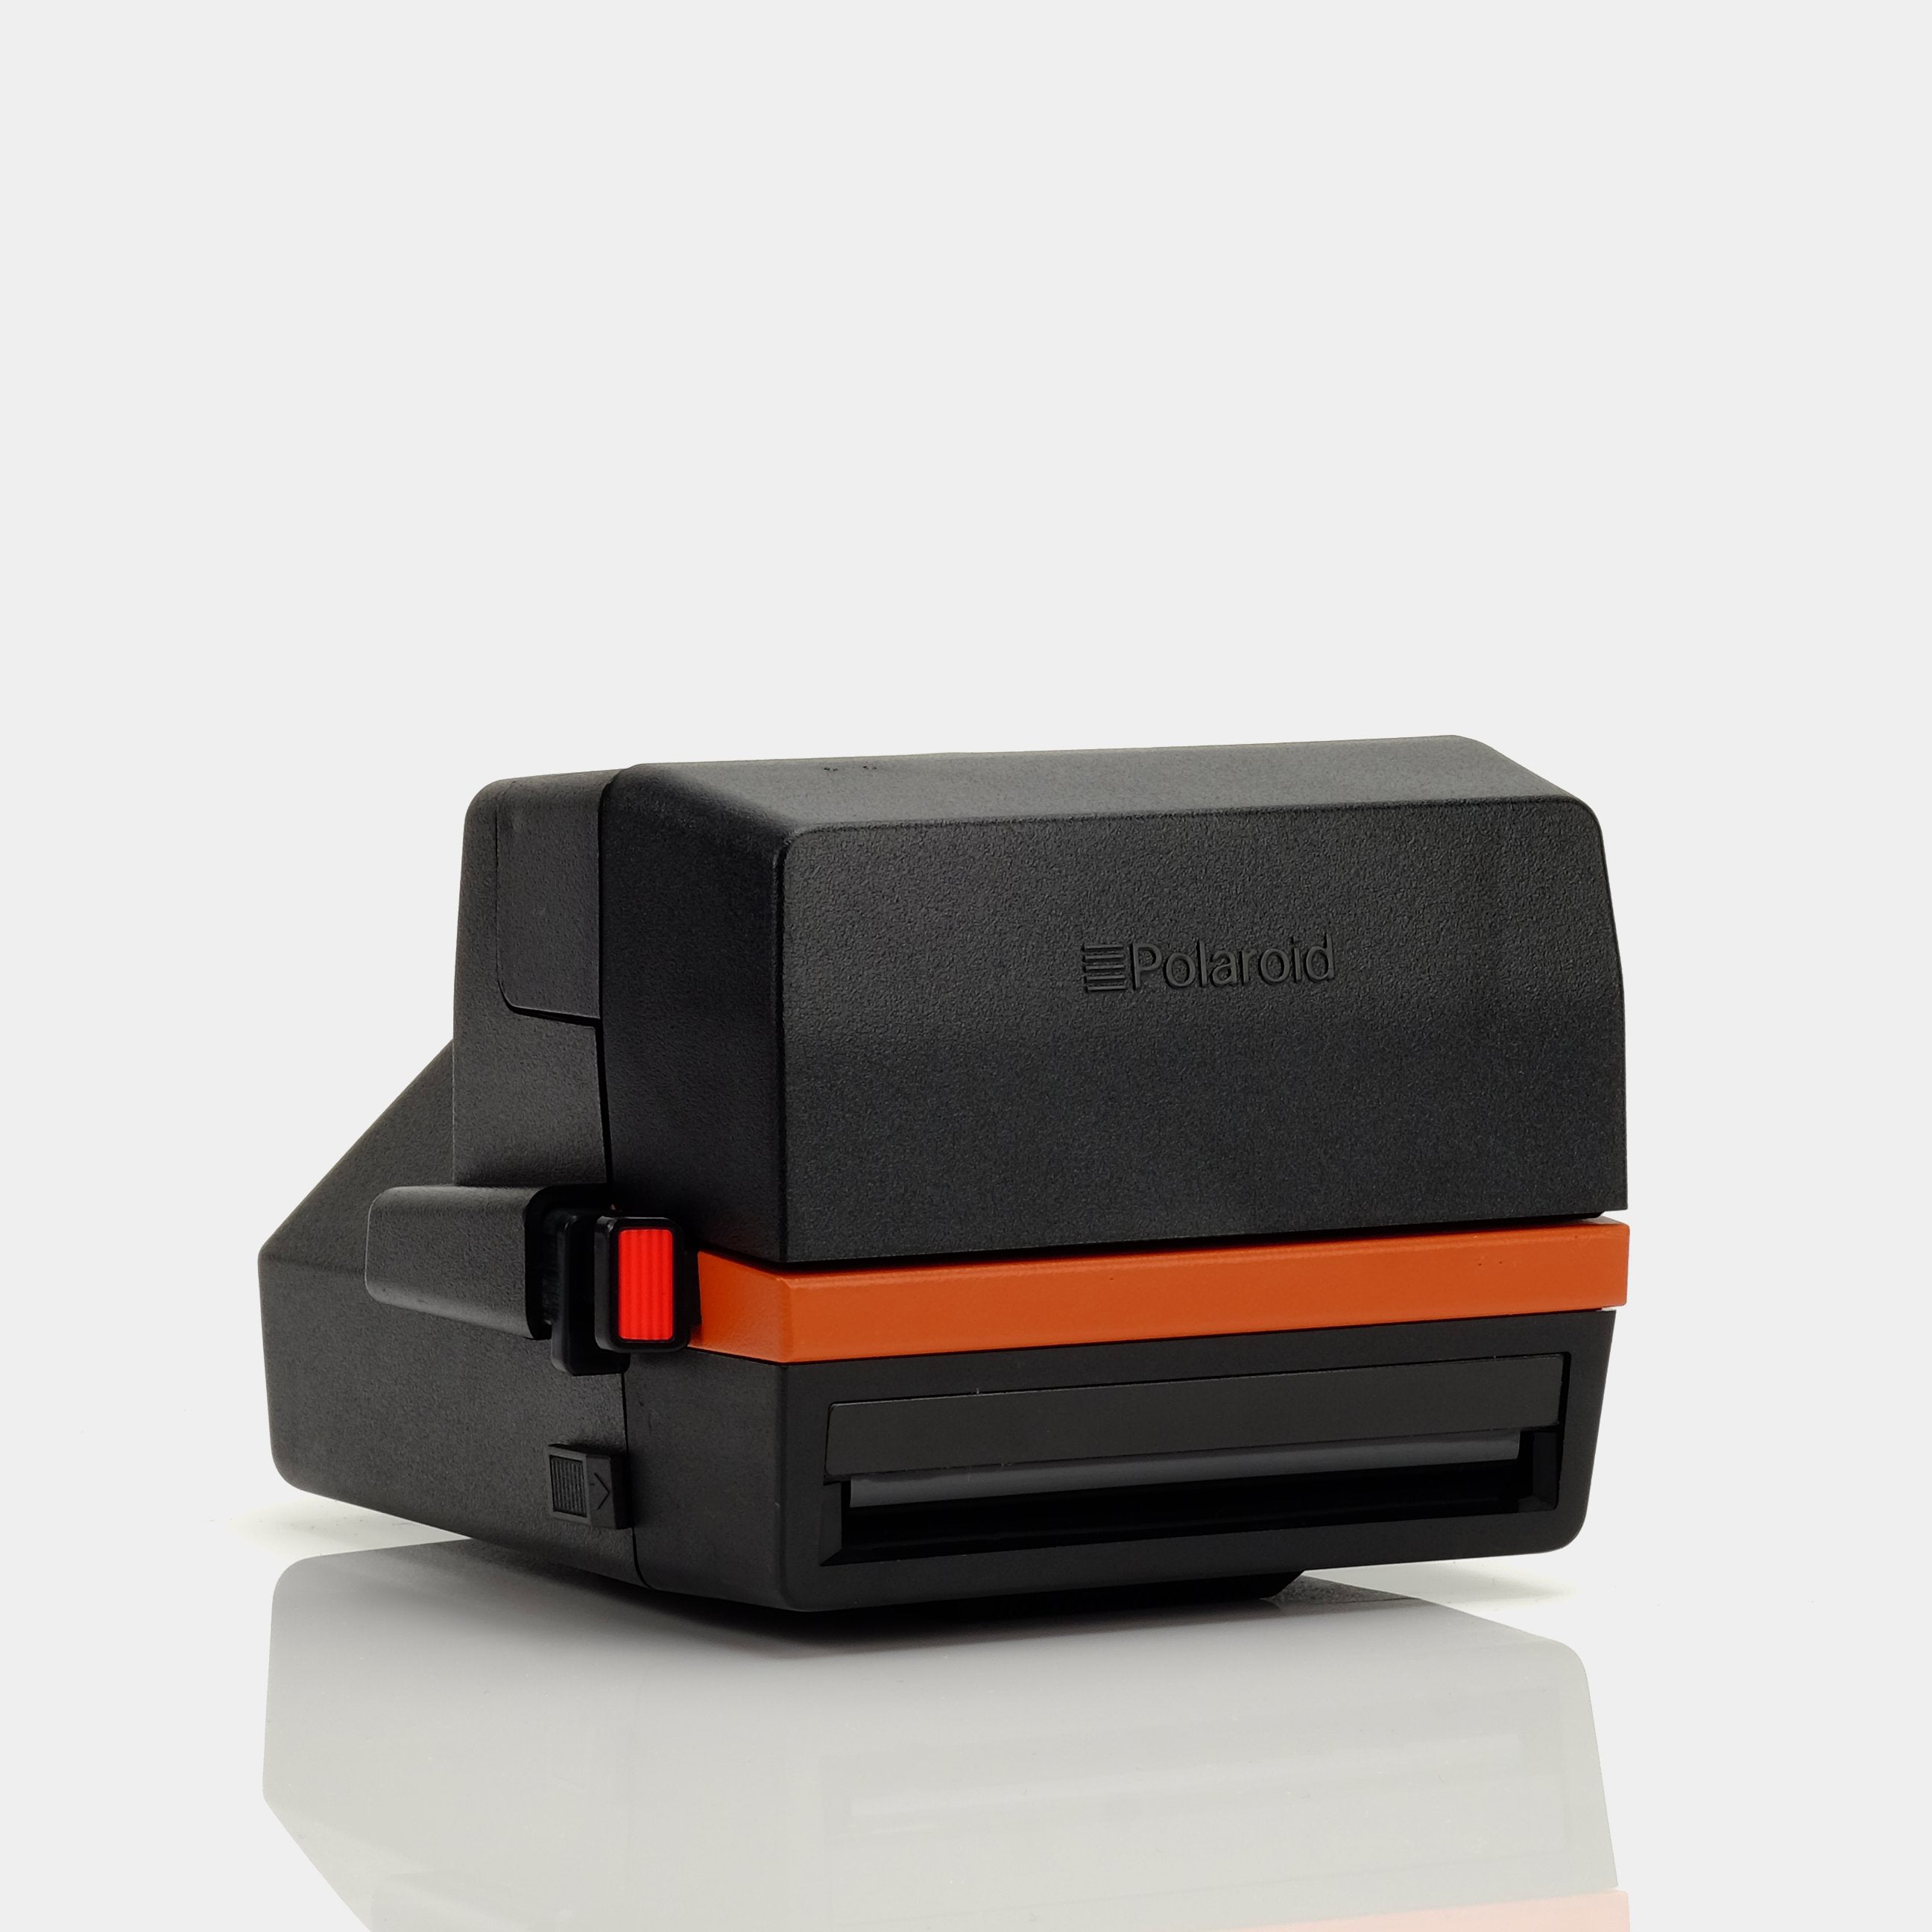 Polaroid 600 Burnt Orange Instant Film Camera